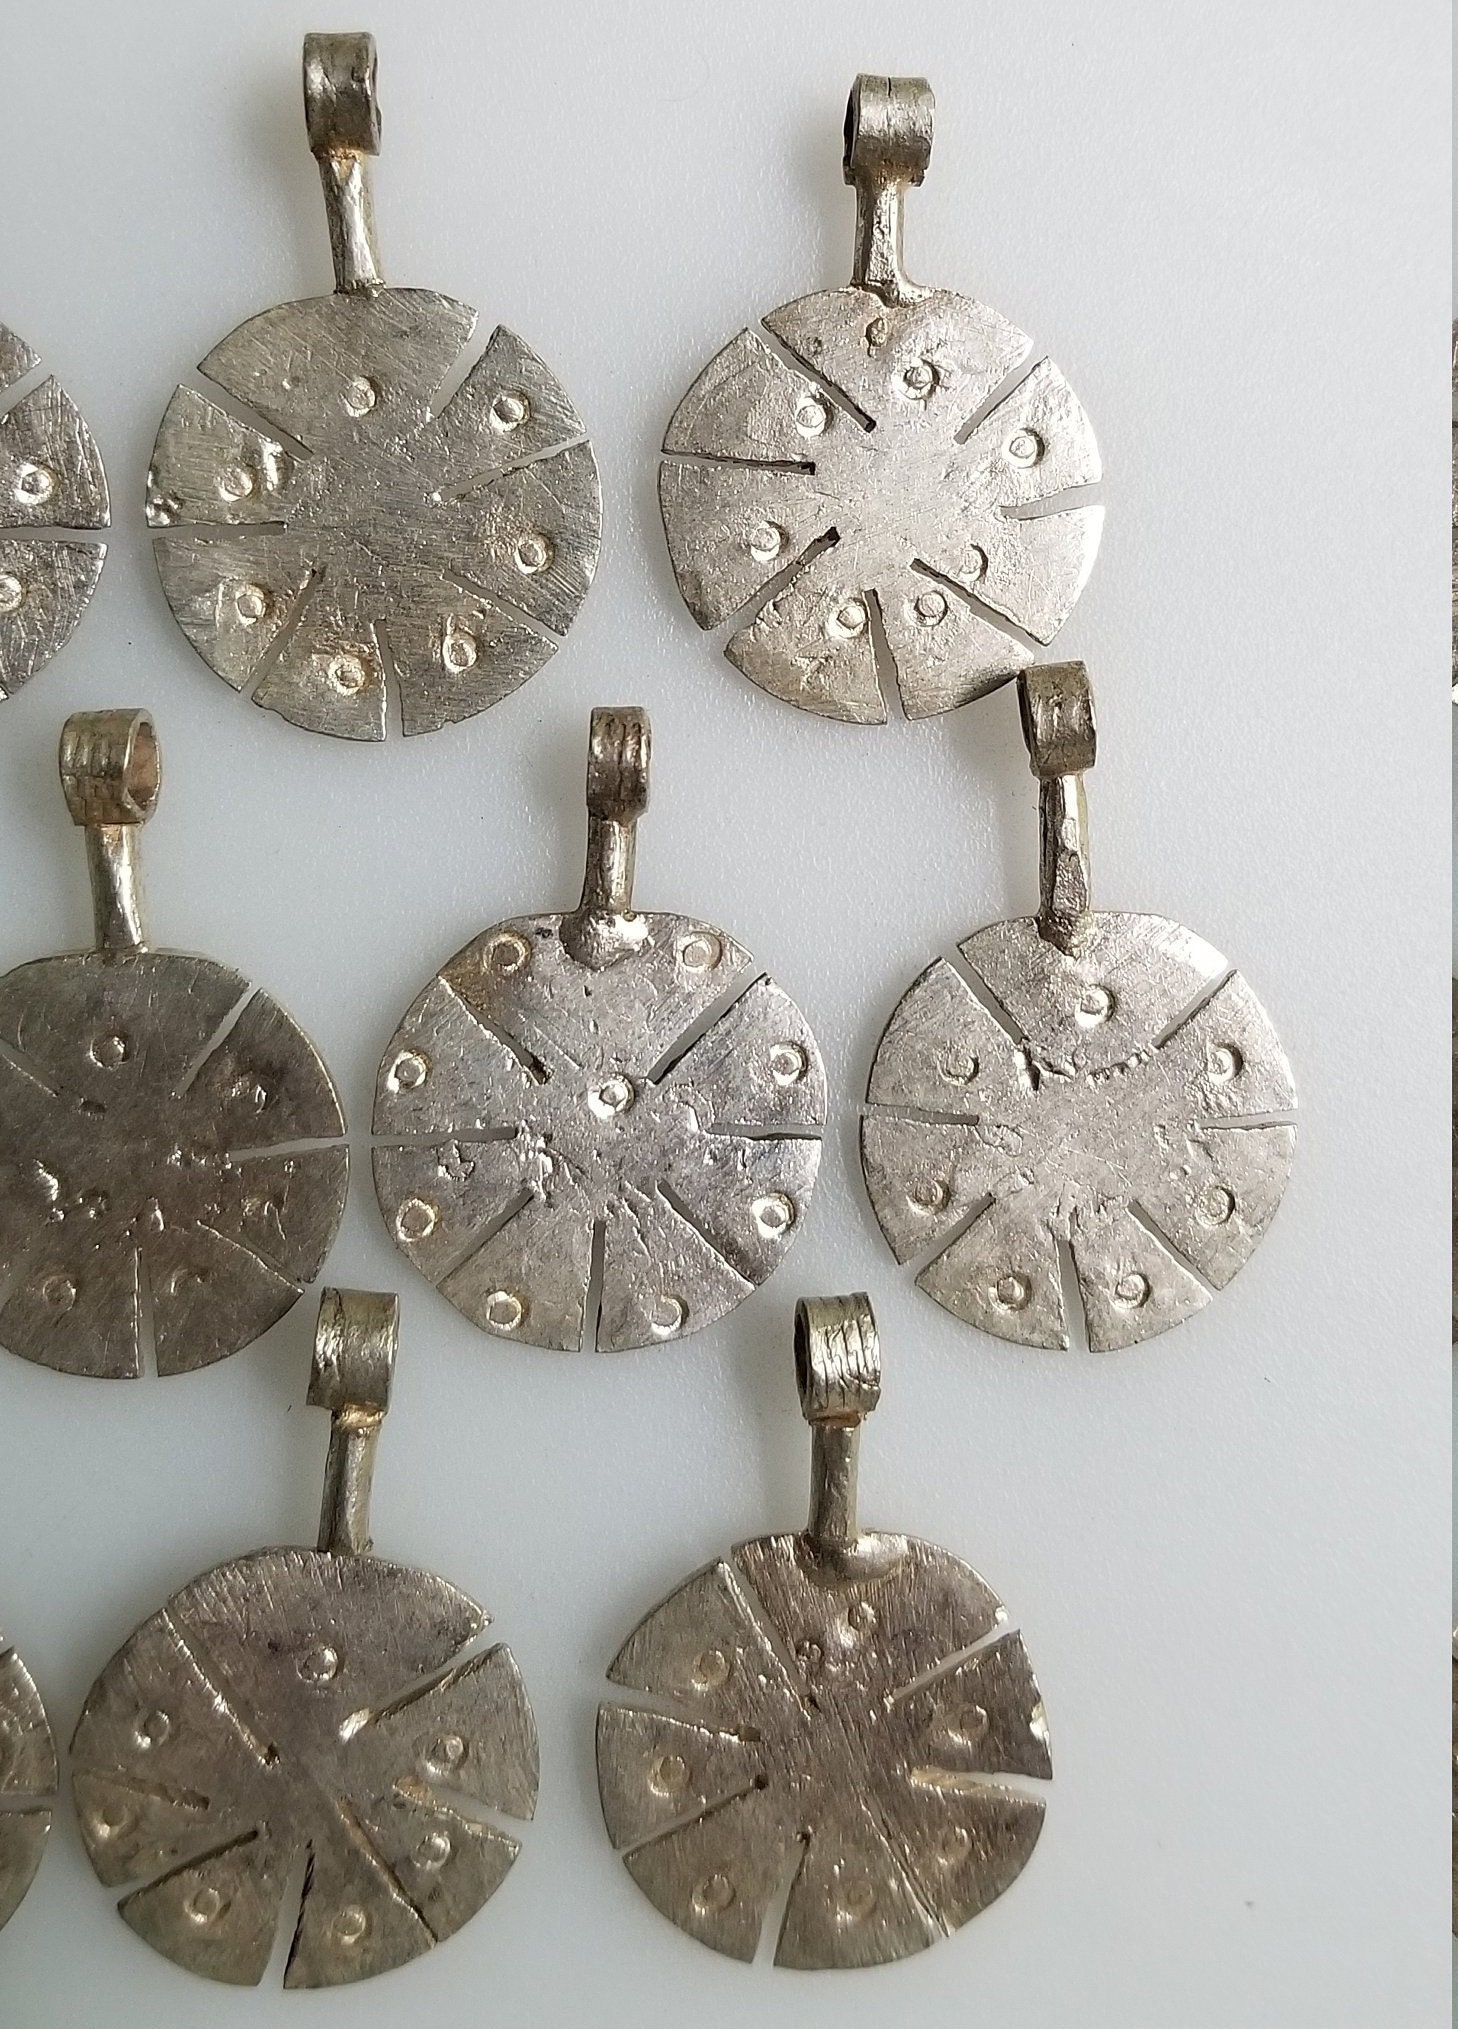 Telsum Ethiopian telsum pendants Ethiopian pendants | Etsy